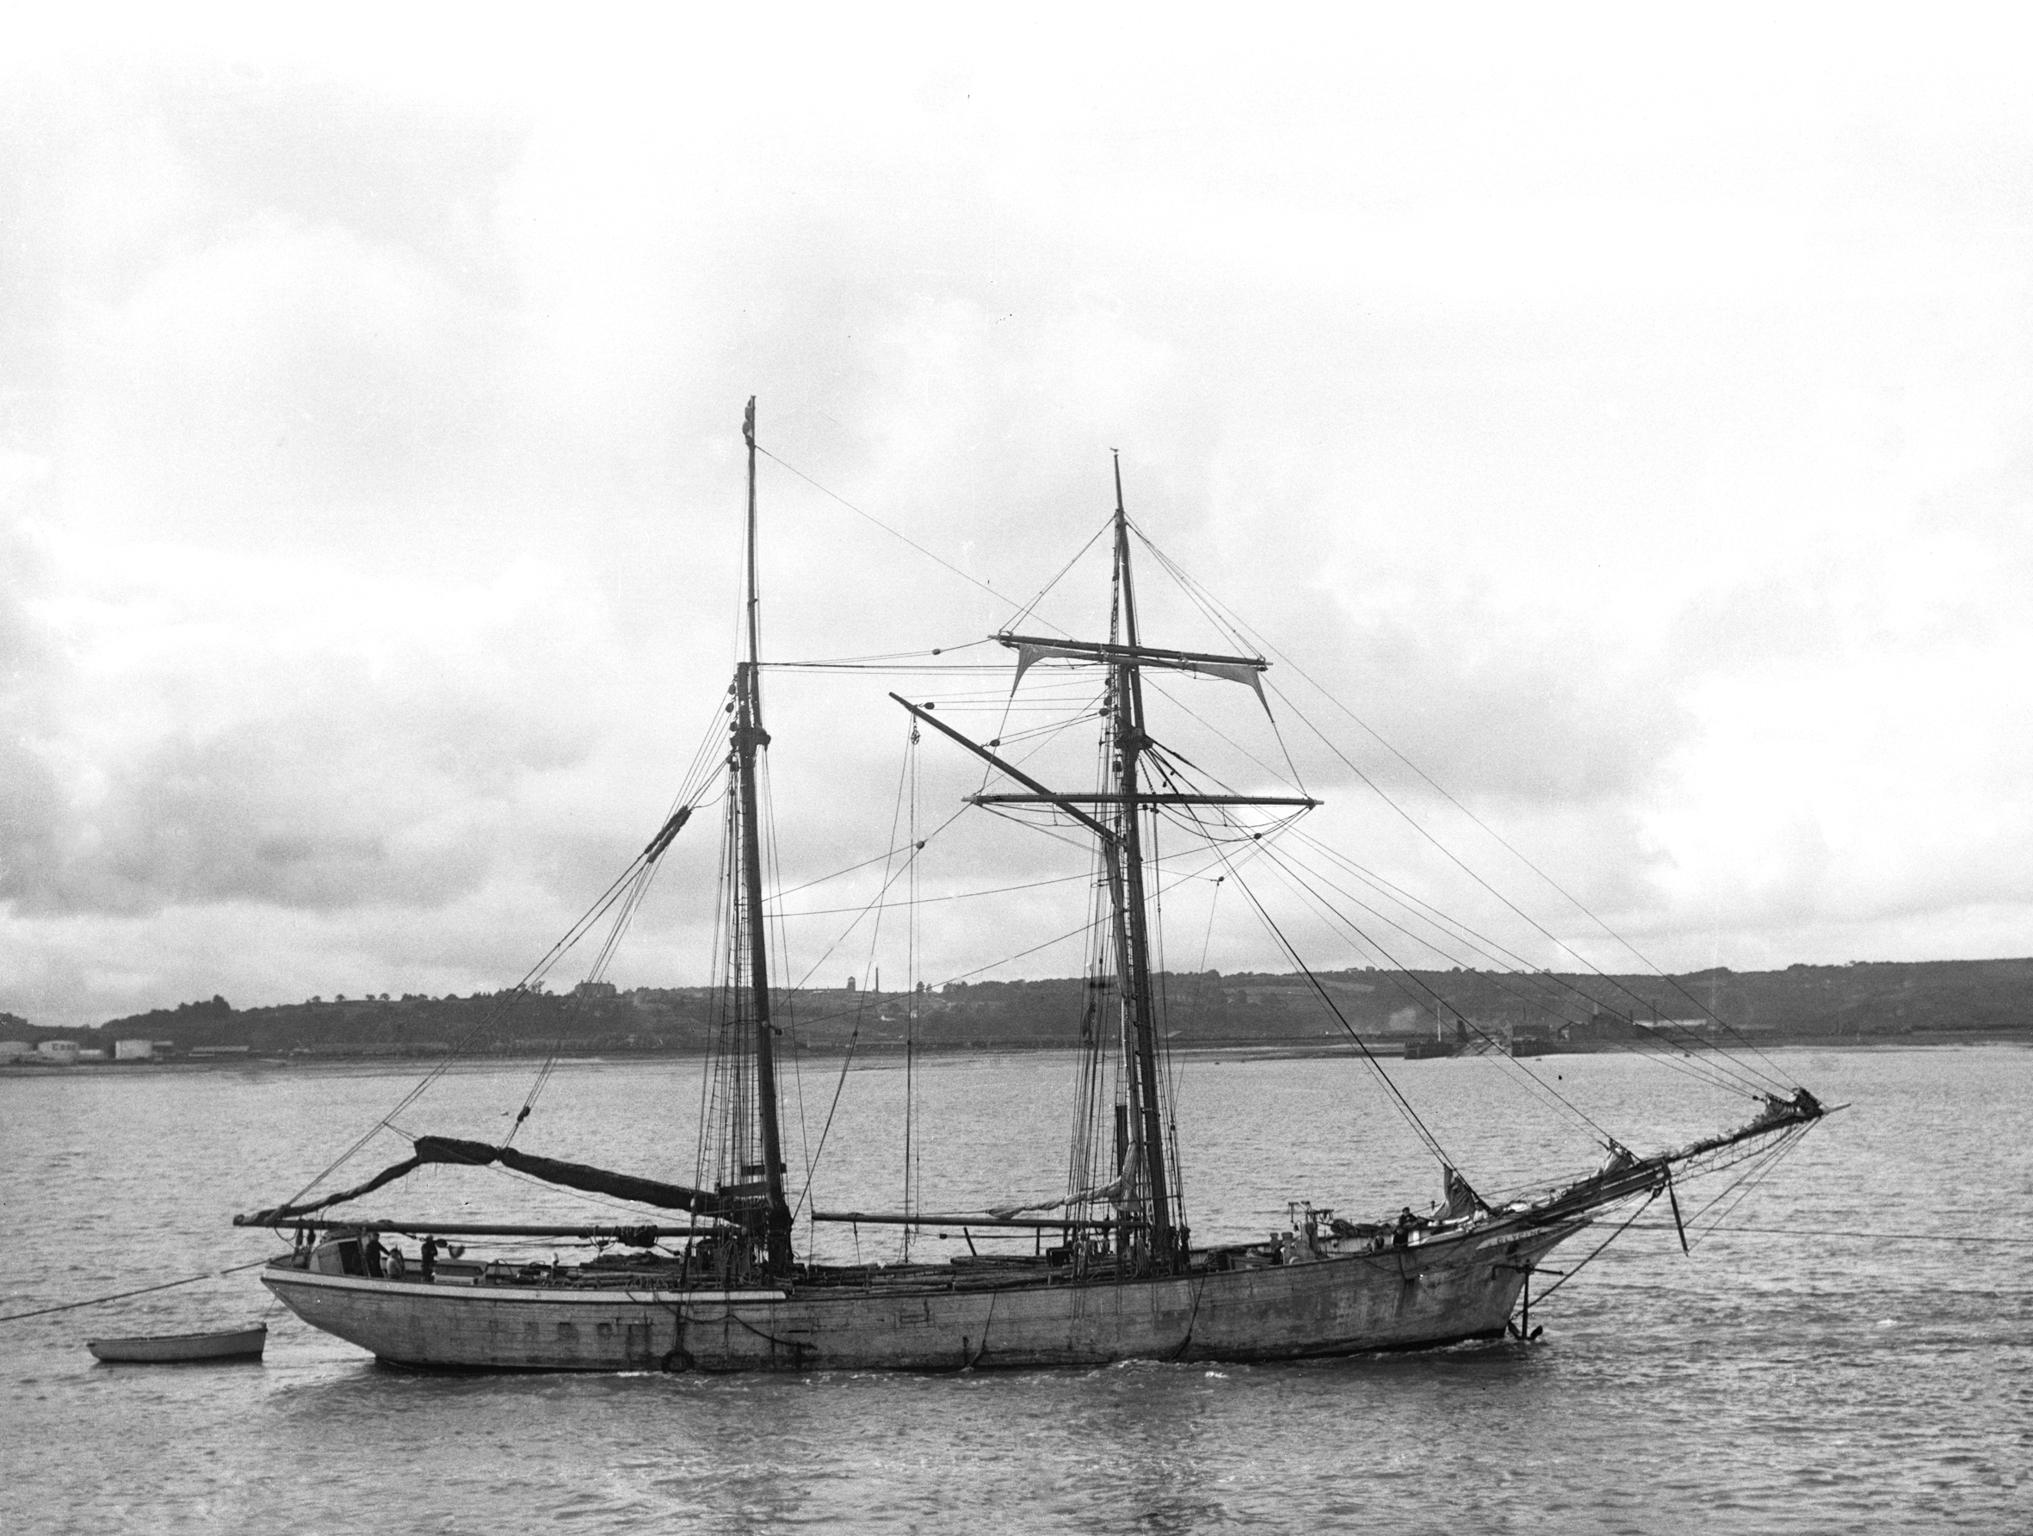 GLYCINE (schooner), glass negative